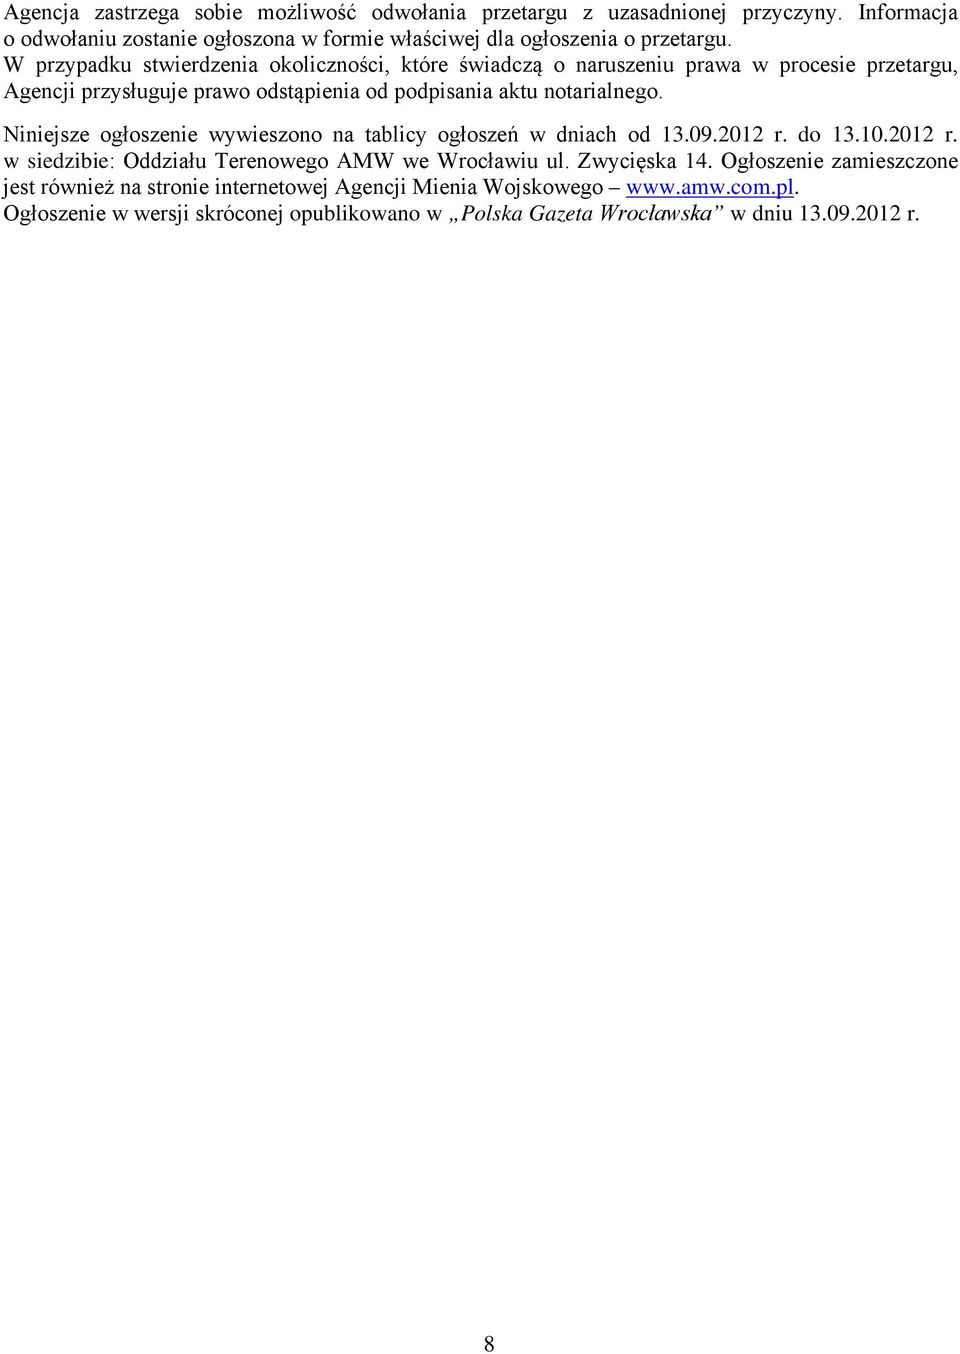 Niniejsze ogłoszenie wywieszono na tablicy ogłoszeń w dniach od 13.09.2012 r. do 13.10.2012 r. w siedzibie: Oddziału Terenowego AMW we Wrocławiu ul. Zwycięska 14.